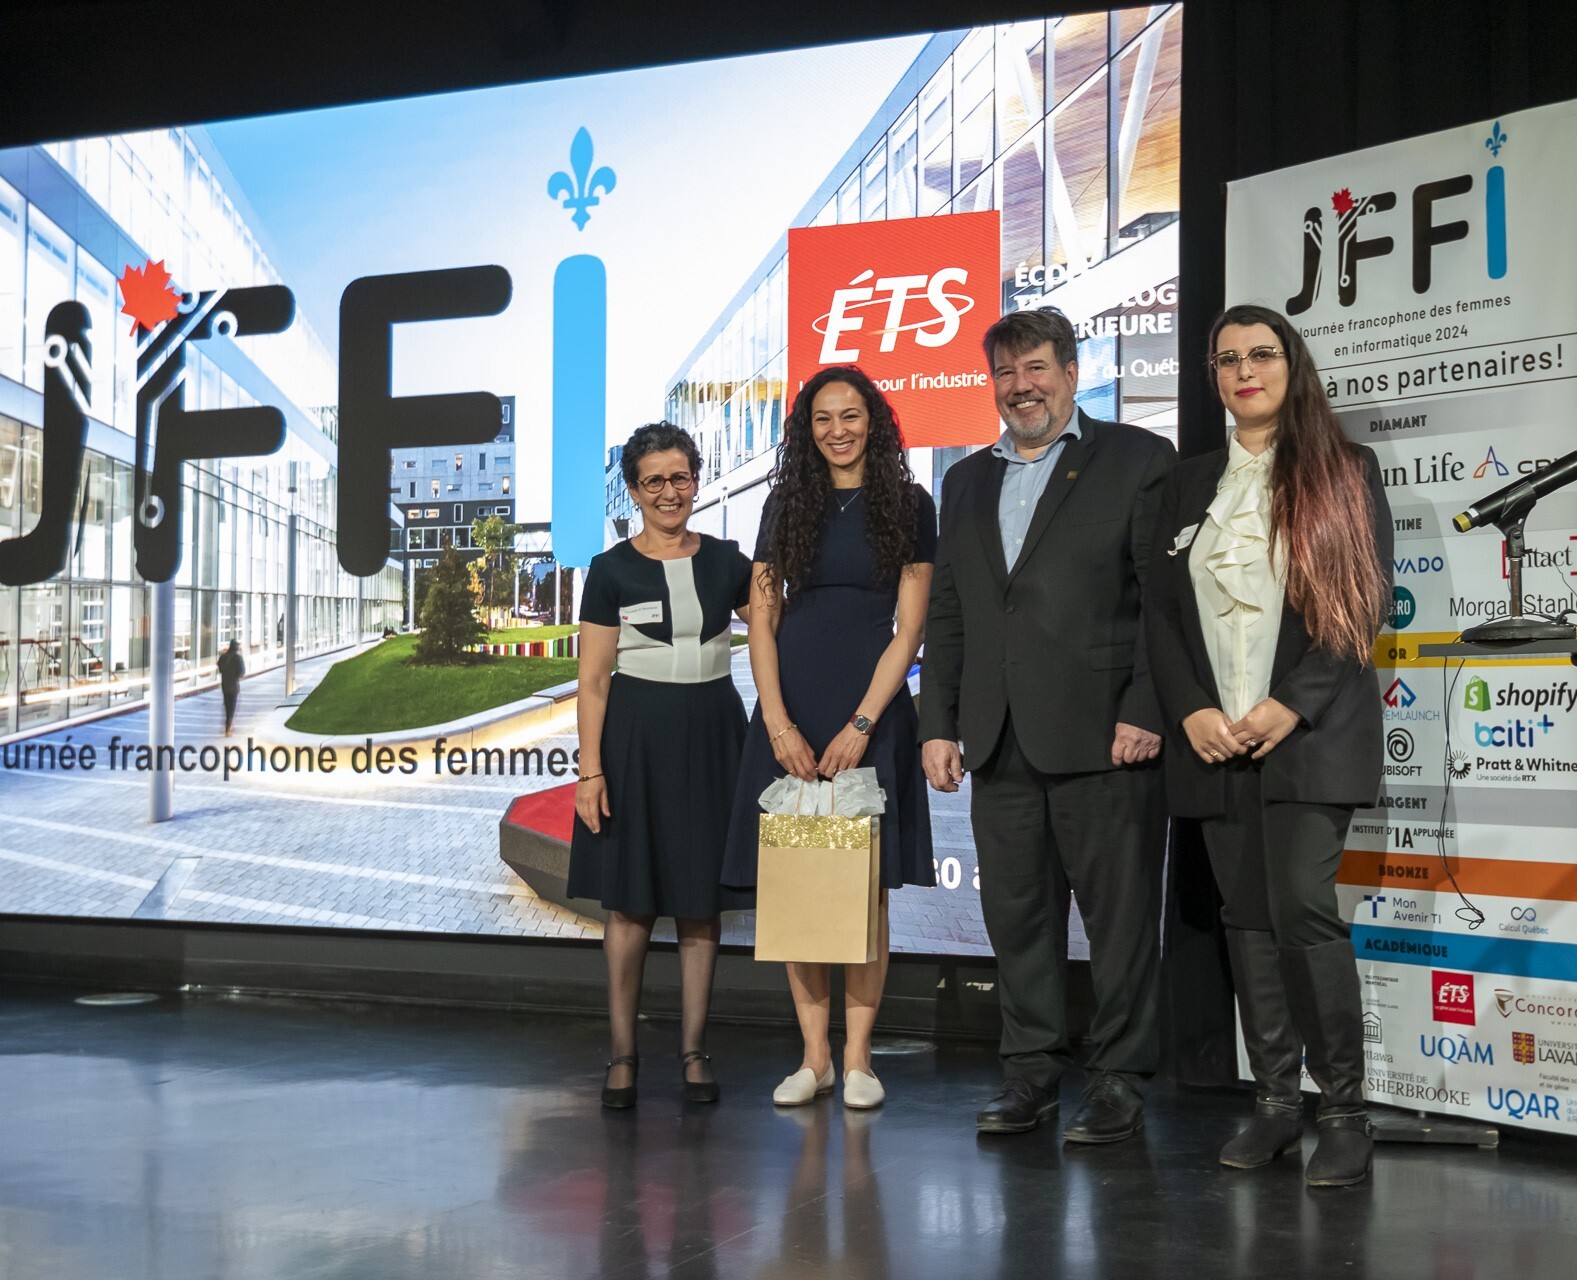 Événement à l'ÉTS célébrant la francophonie avec partenaires et invités.